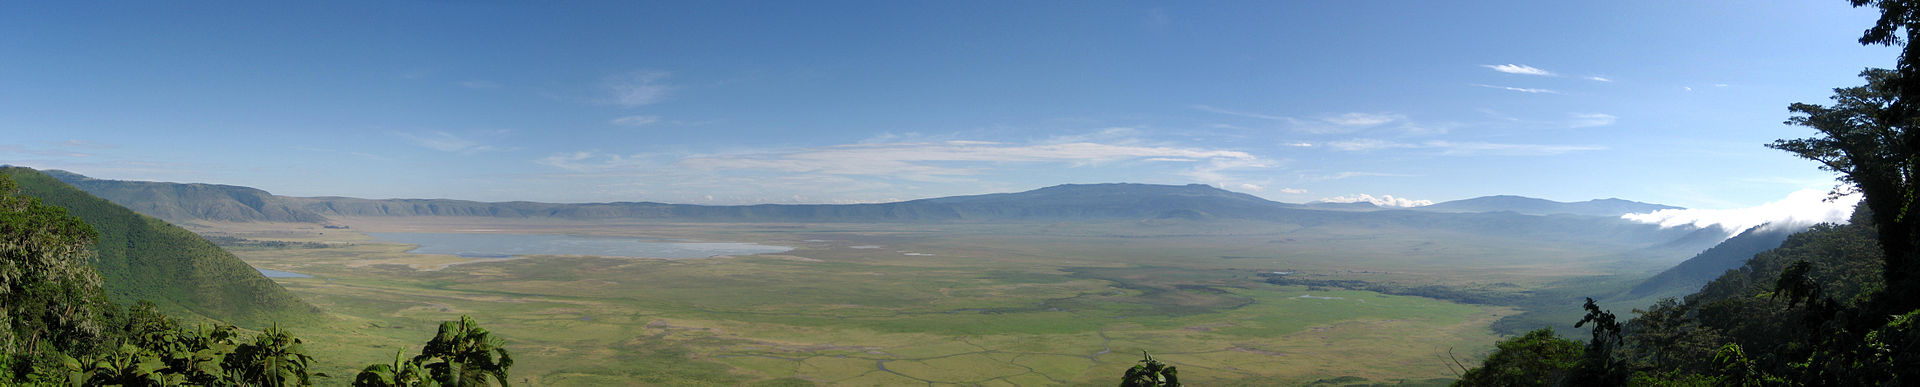 Ngorongoro_Crater_Panorama